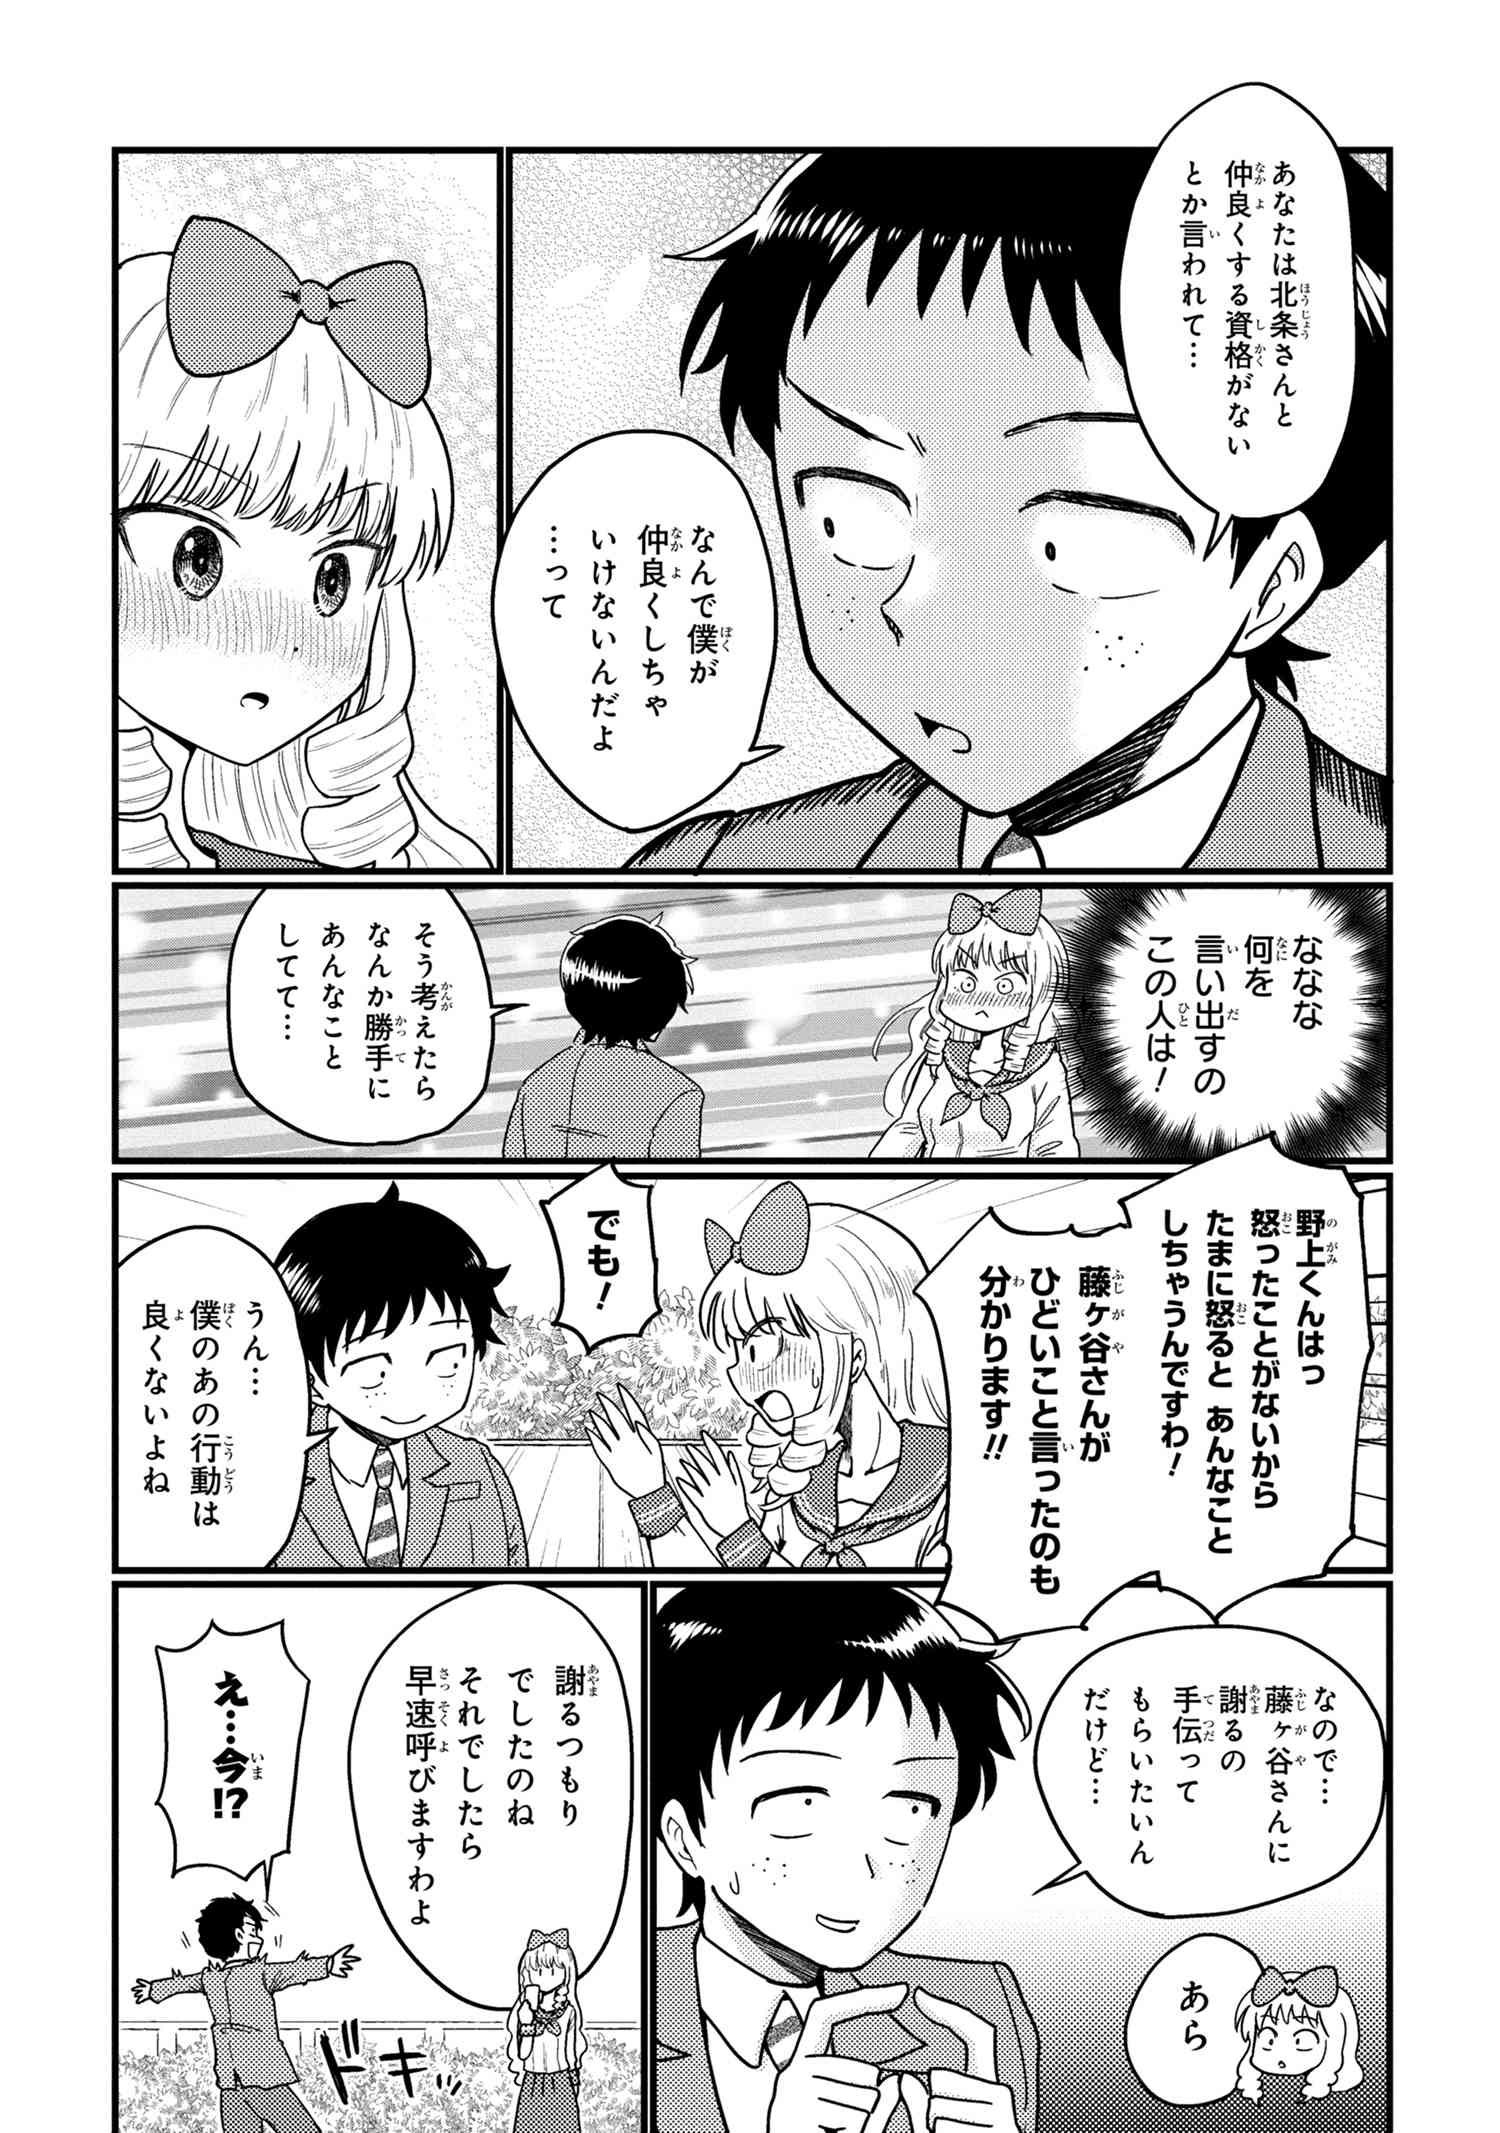 Houjou Urara no renai shousetsu o kaki nasai! - Chapter 13 - Page 3